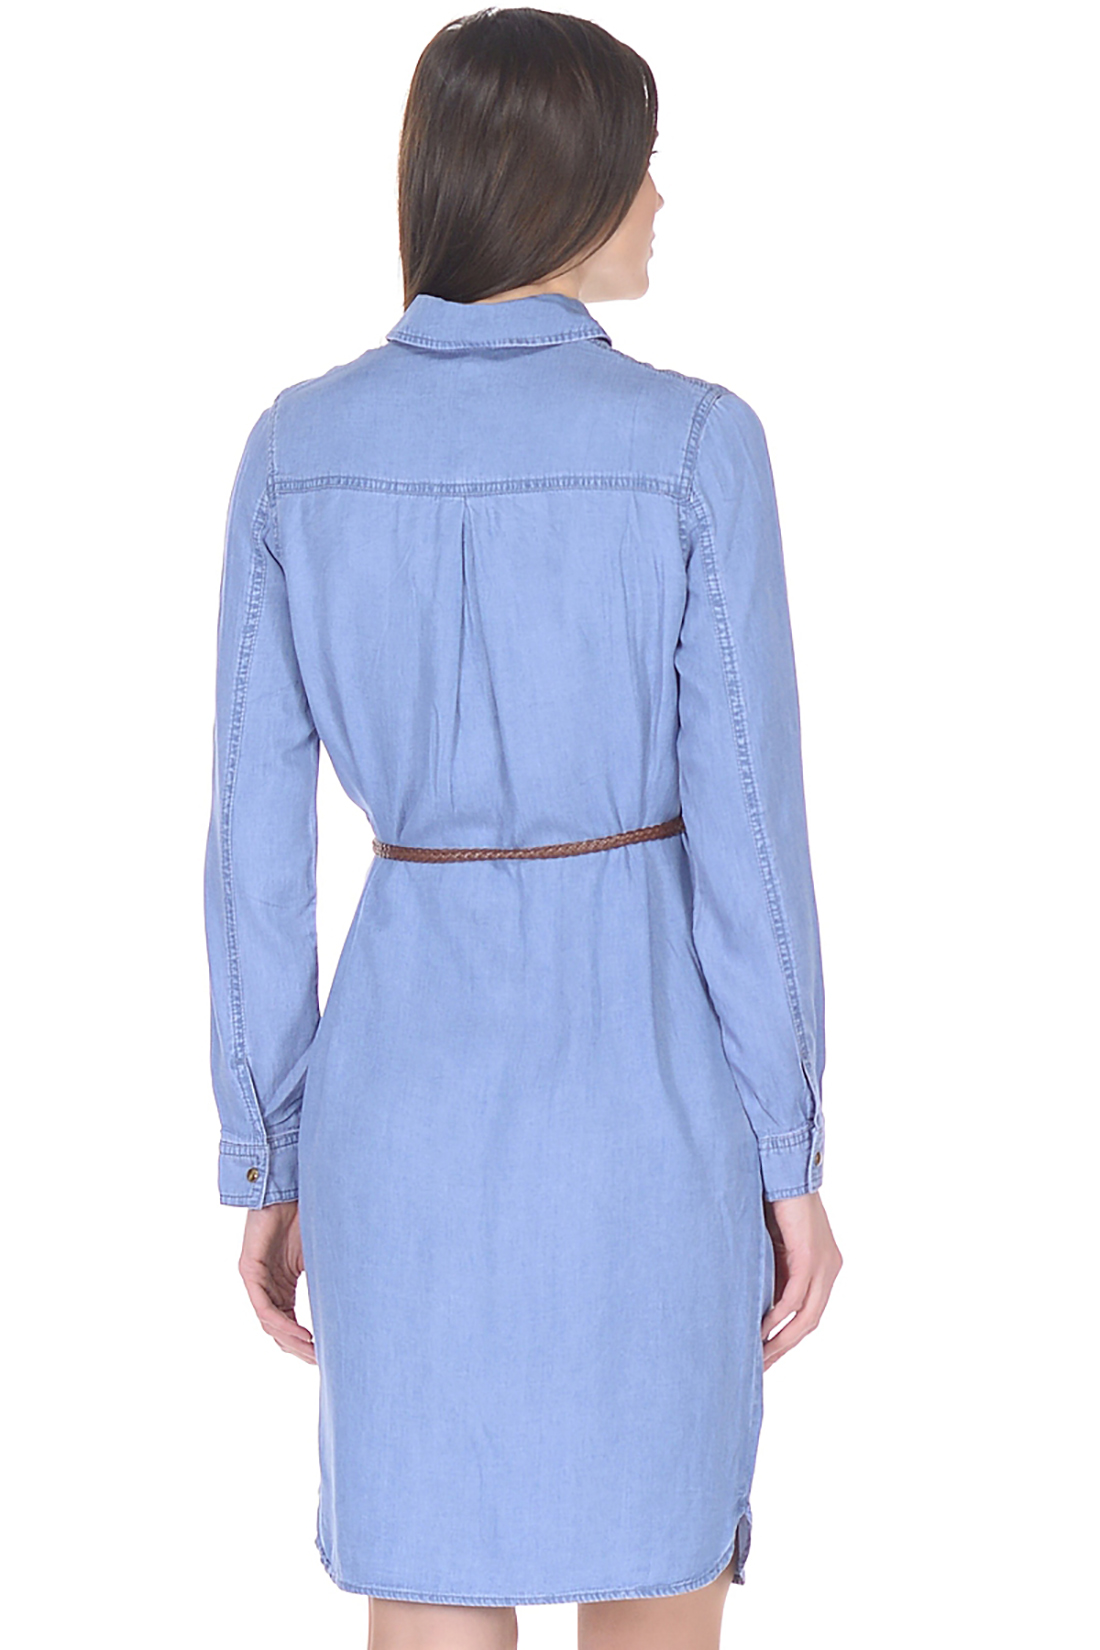 Платье-рубашка из денима (арт. baon B458109), размер L, цвет blue denim#голубой Платье-рубашка из денима (арт. baon B458109) - фото 2